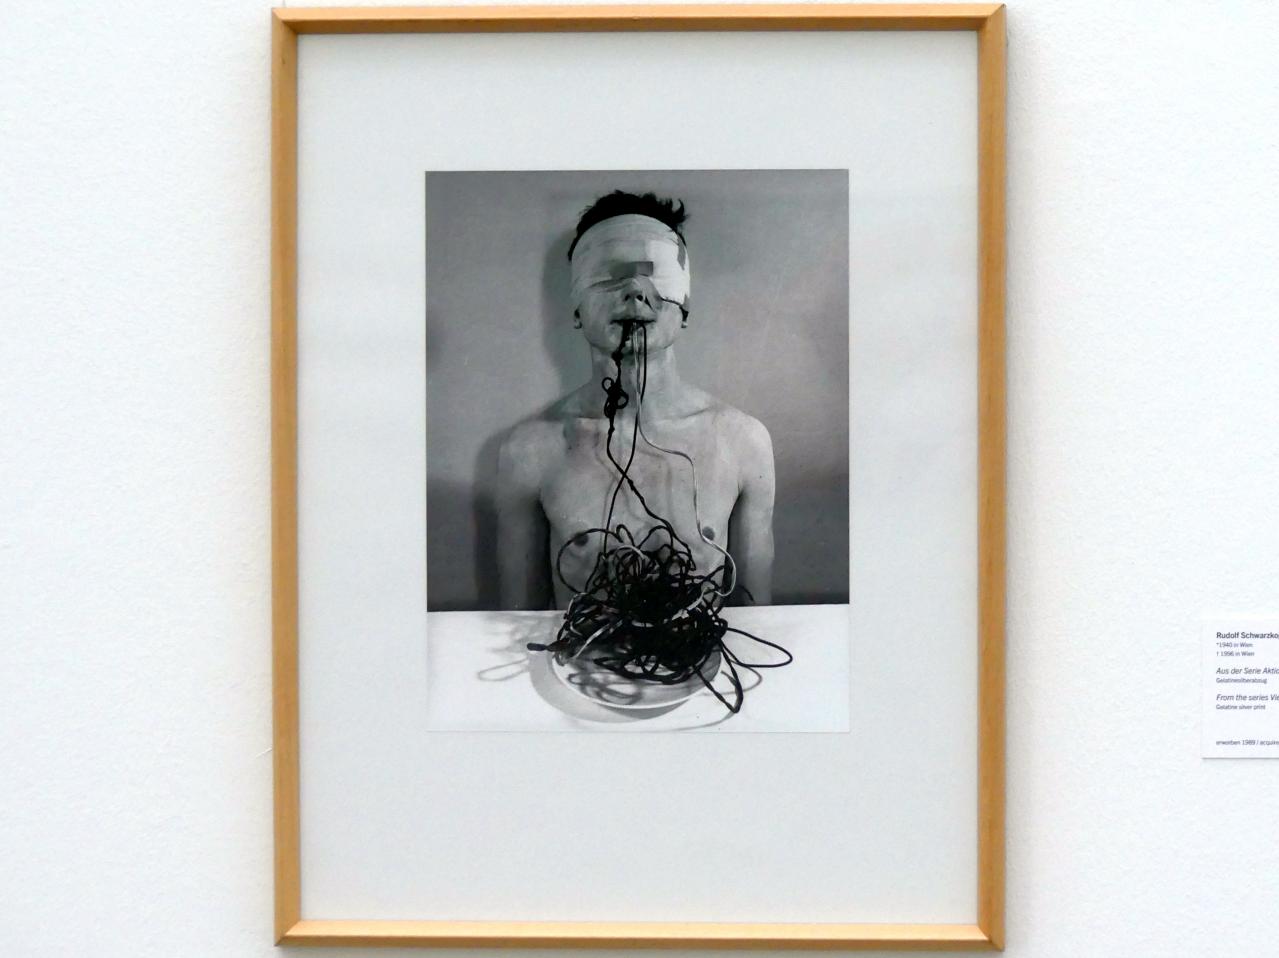 Rudolf Schwarzkogler (1965), Aus der Serie Aktion Wien, Linz, Lentos Kunstmuseum Linz, Saal 9 - Das Jahrzehnt des Aufbruchs, 1965–1966